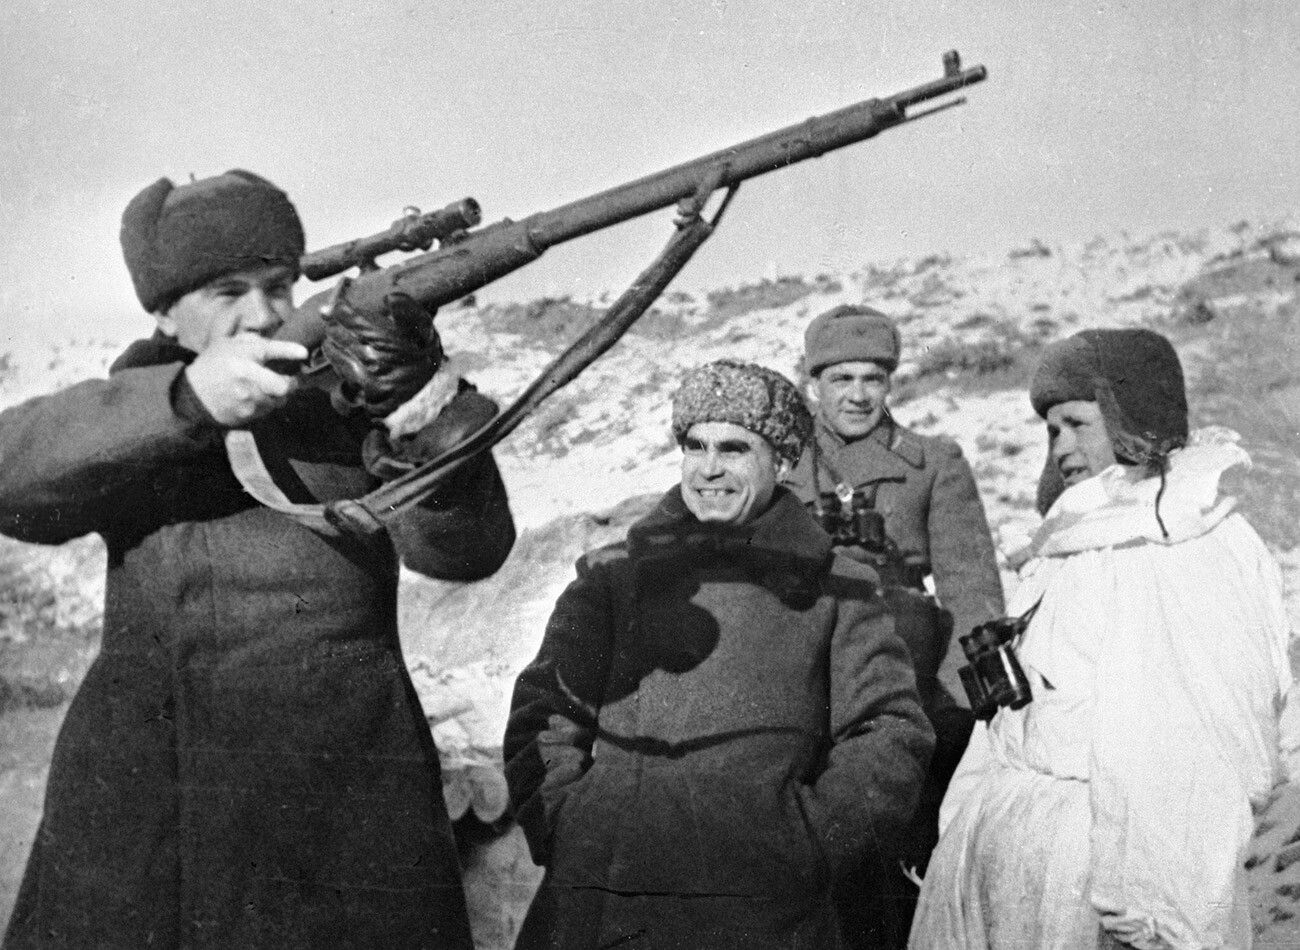 Vasily Chuikov tests Vasily Zaitsev's sniper rifle.